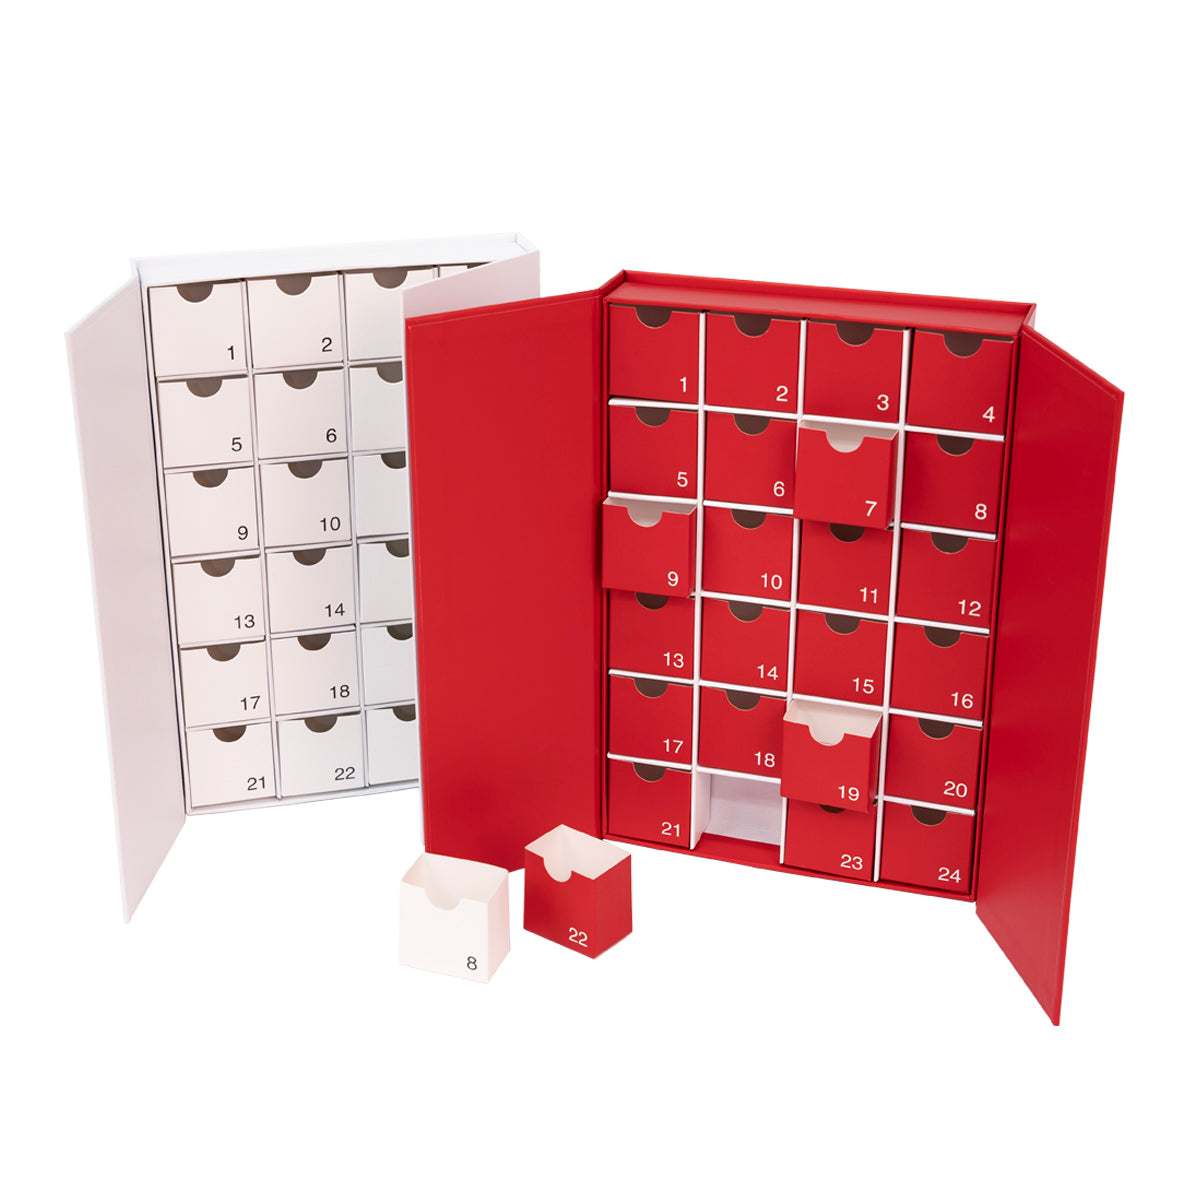 Wholesale Gift Boxes Bulk Retail & Gift Packaging Luv2Pak